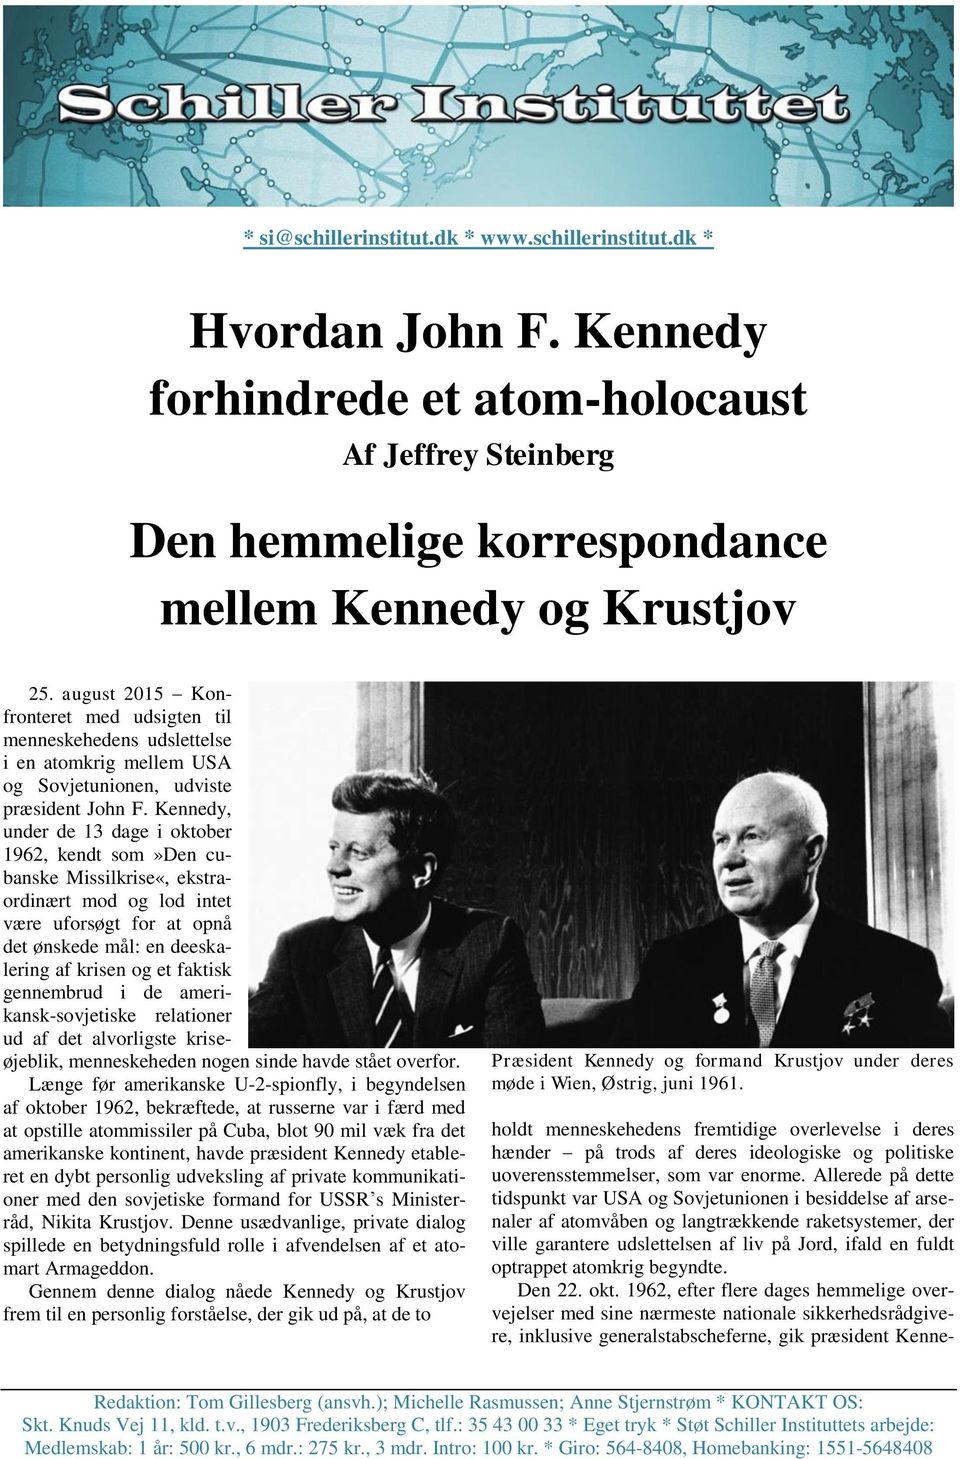 Kennedy, under de 13 dage i oktober 1962, kendt som»den cubanske Missilkrise«, ekstraordinært mod og lod intet være uforsøgt for at opnå det ønskede mål: en deeskalering af krisen og et faktisk